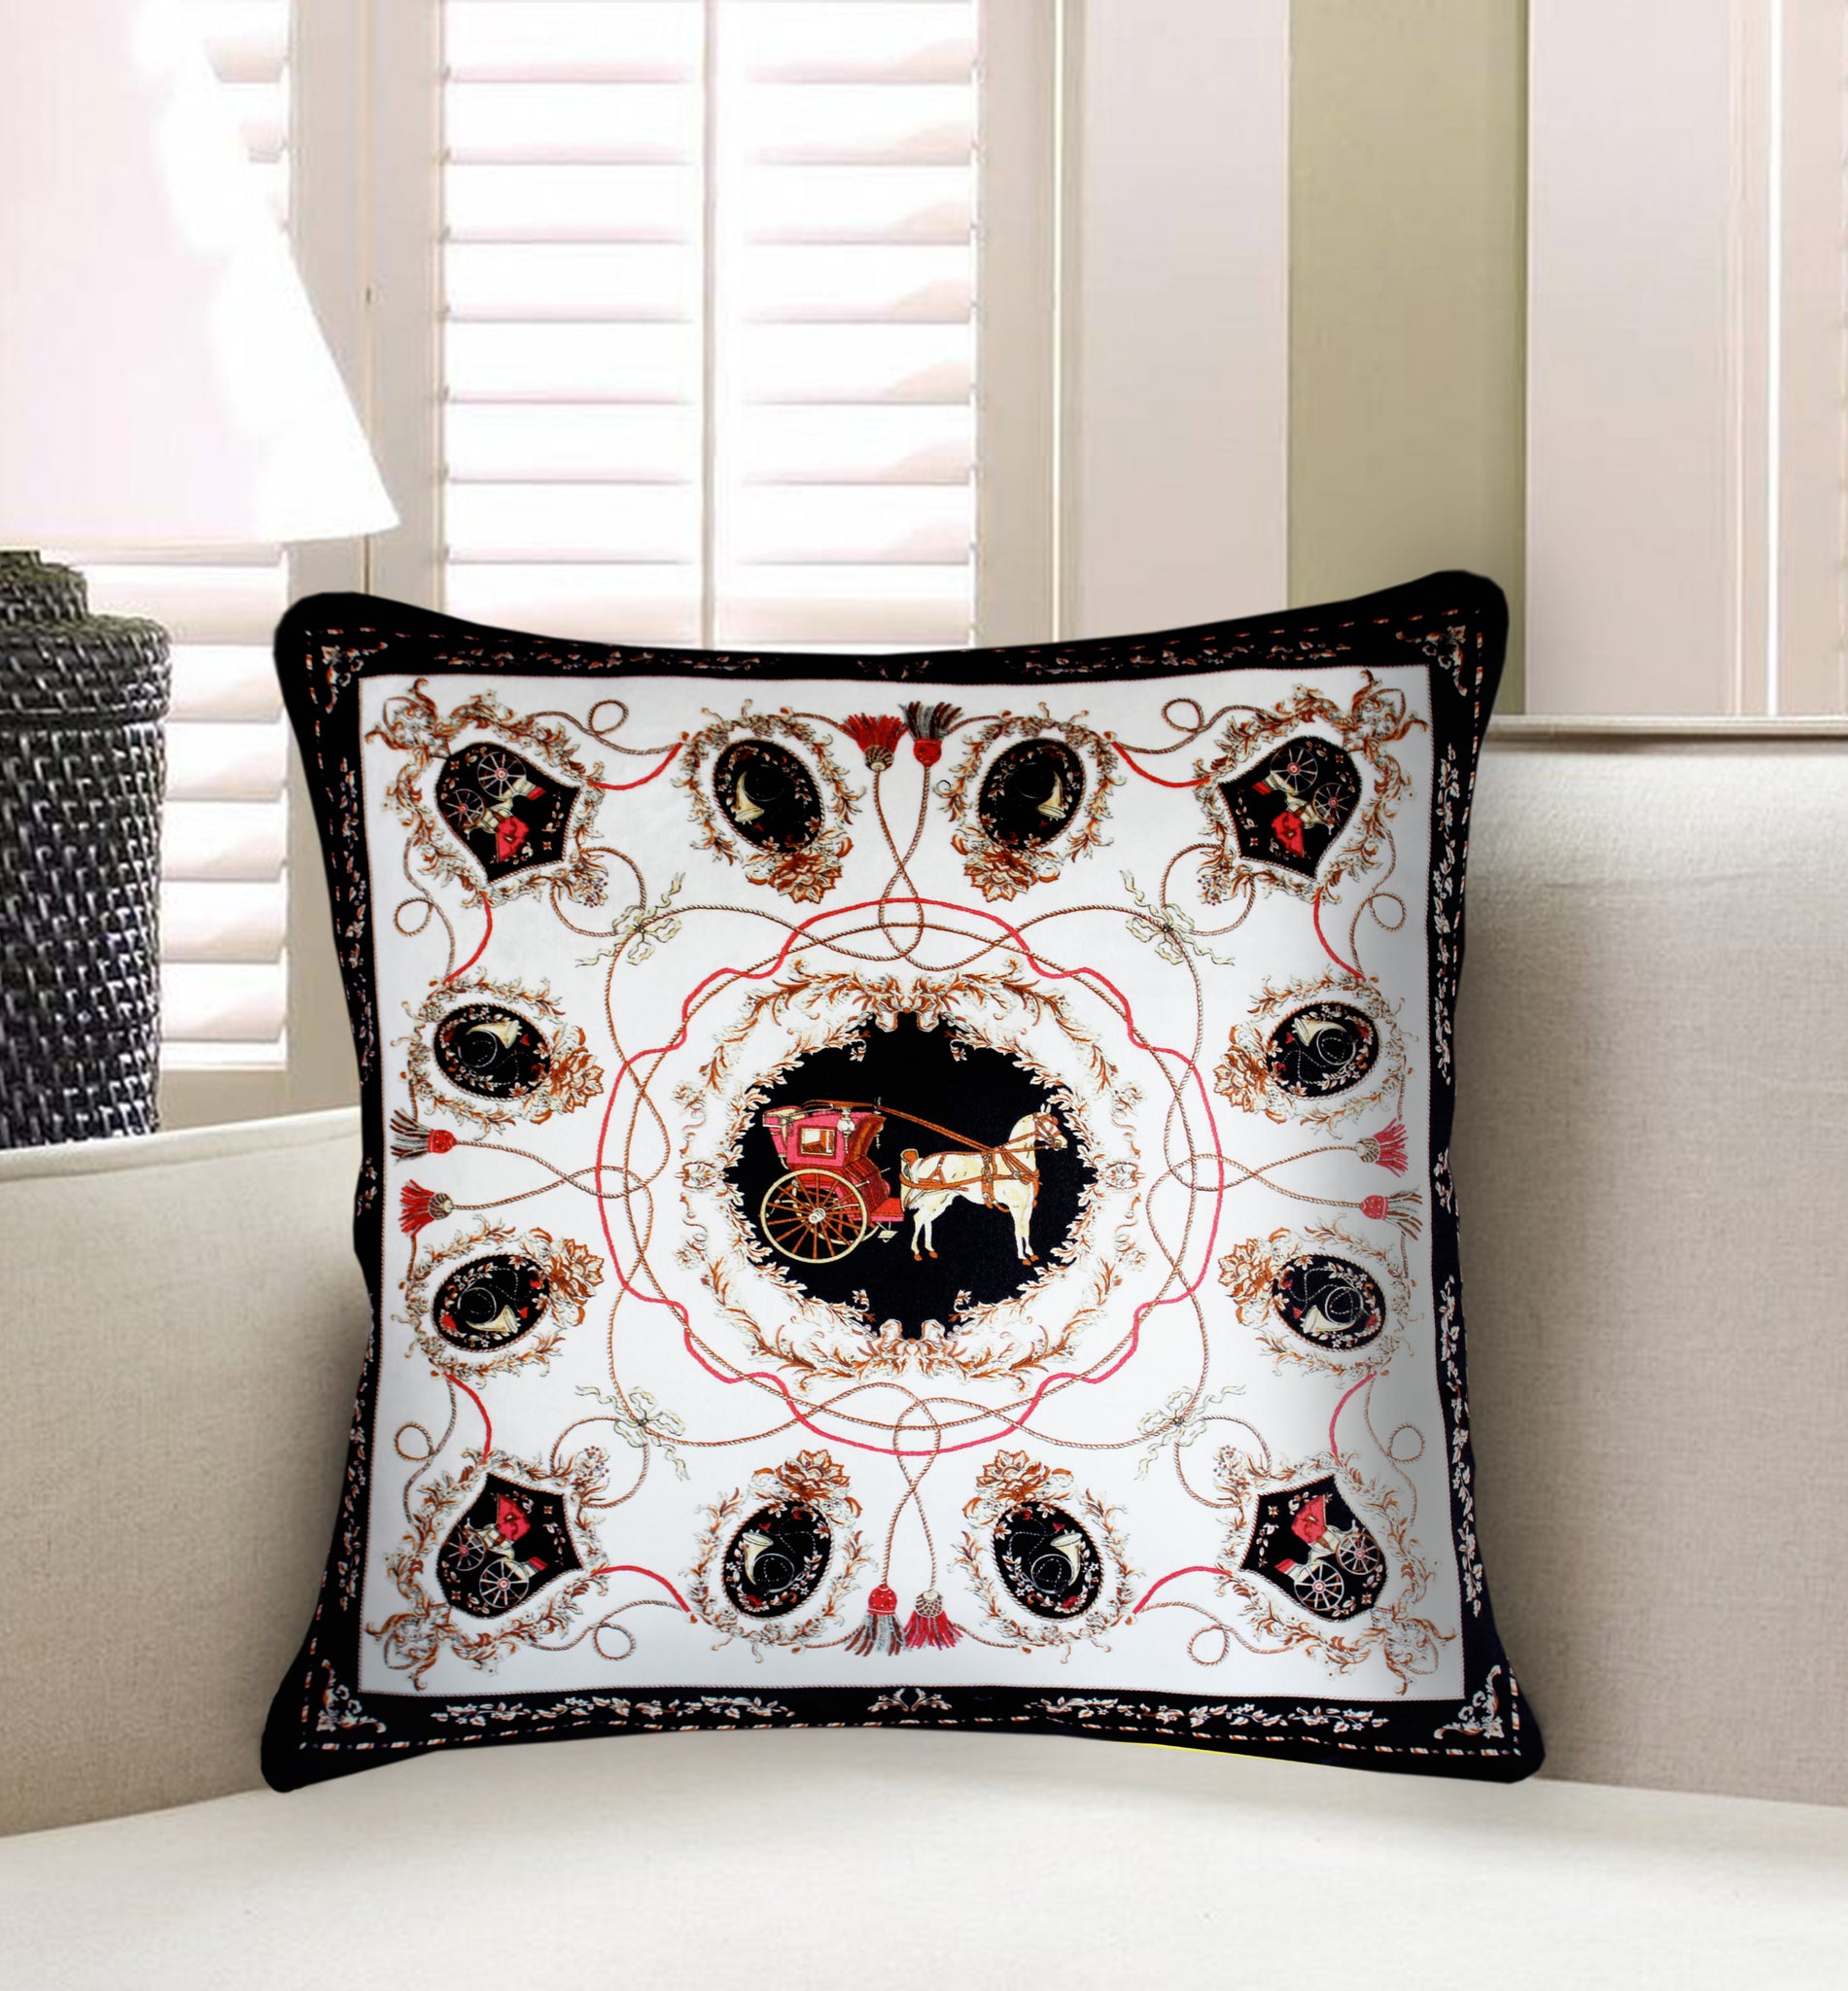 Black Velvet Cushion Cover, Hermes Inspired Horse Printed Decorative P